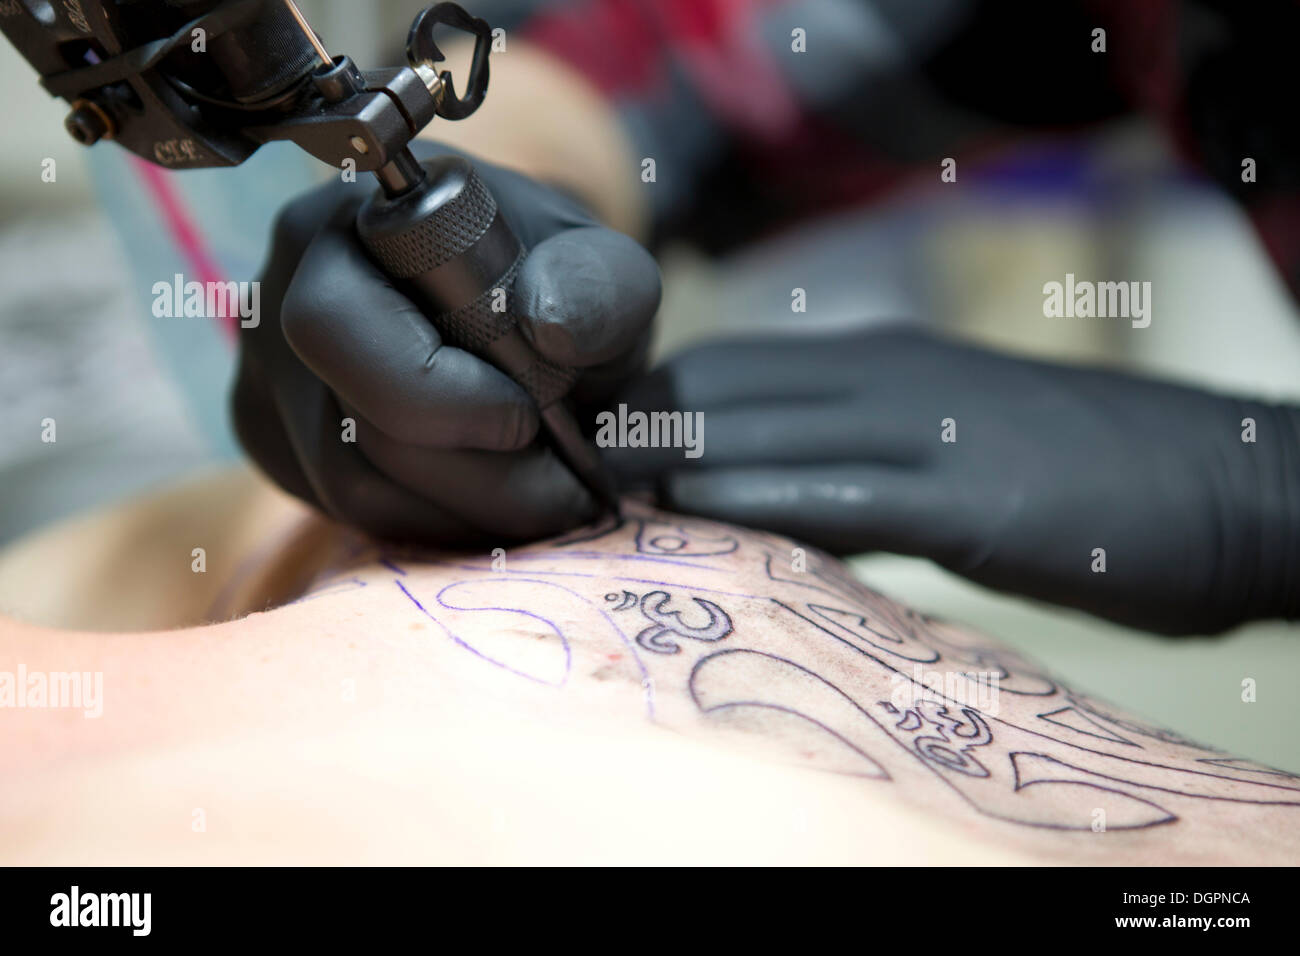 Le mani di un tatuaggio artista con un dermografo applicando un tatuaggio su una spalla Foto Stock